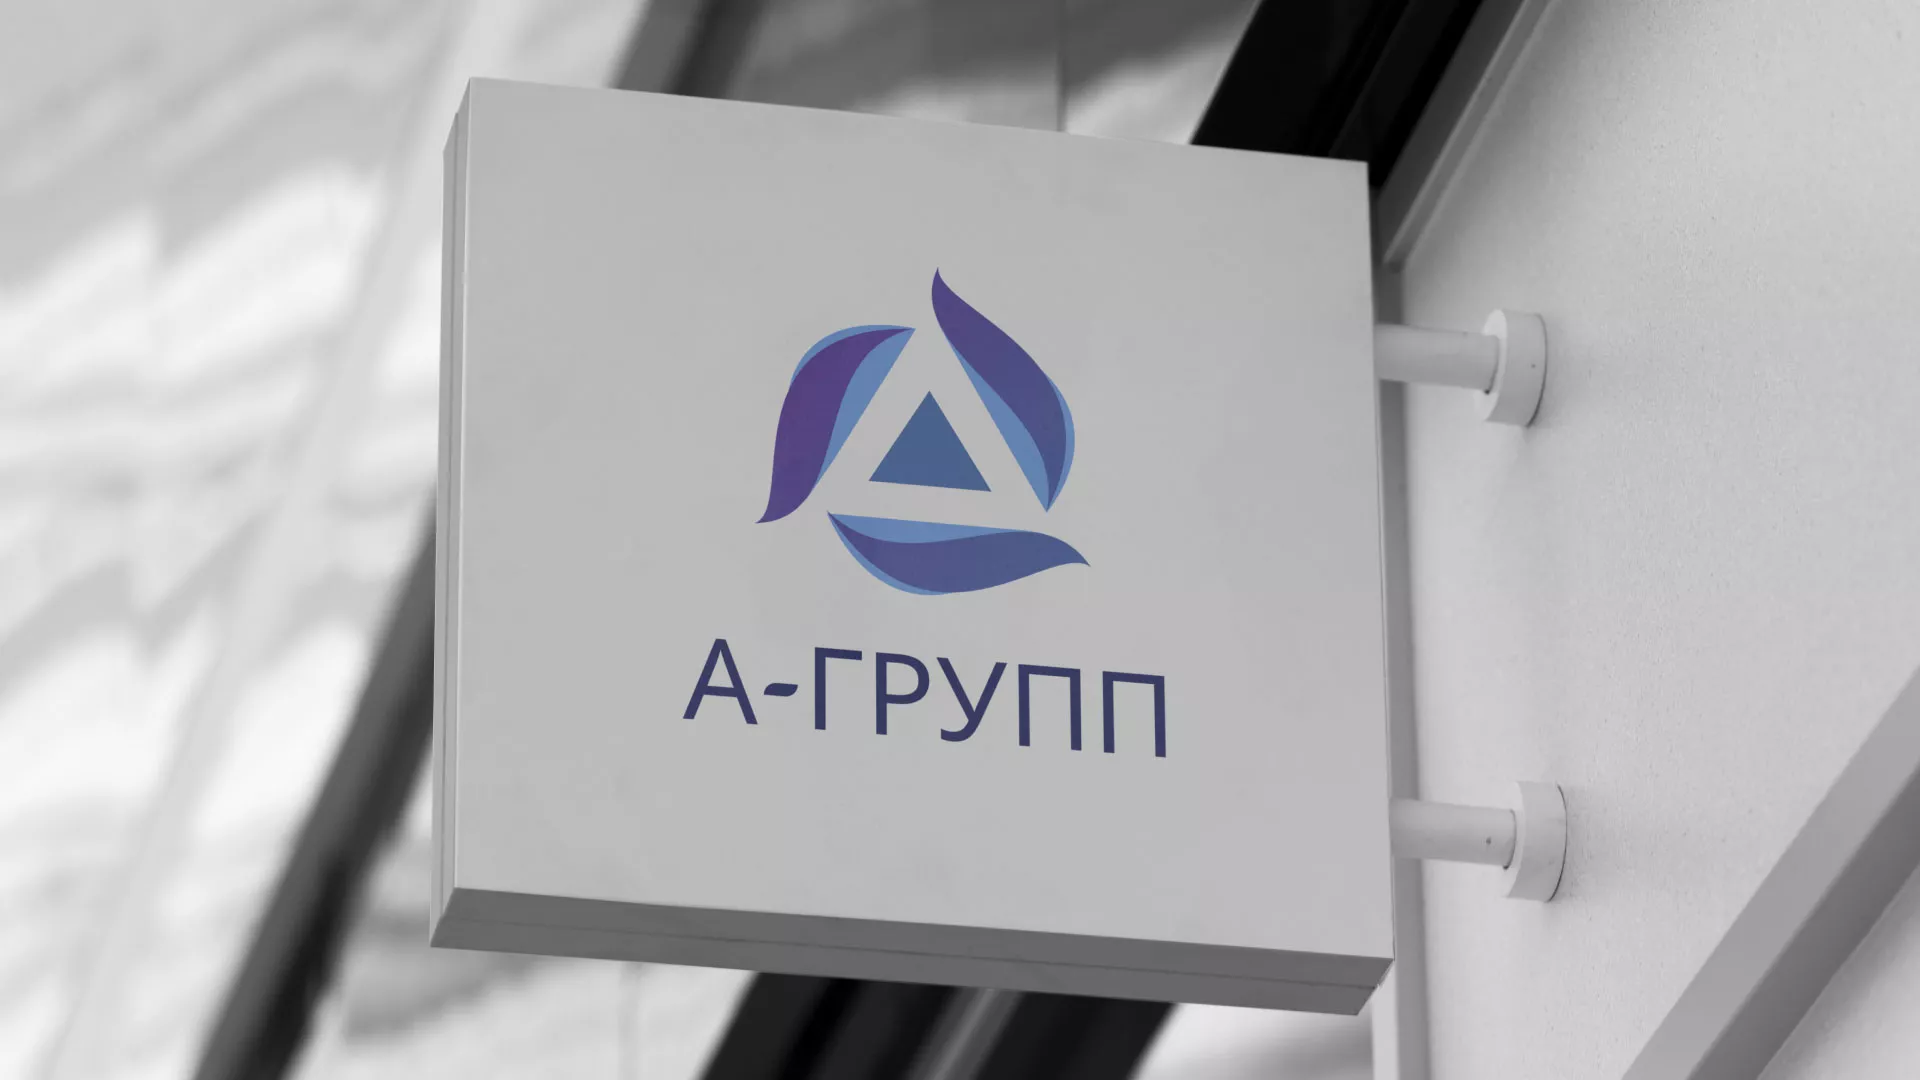 Создание логотипа компании «А-ГРУПП» в Гаджиево